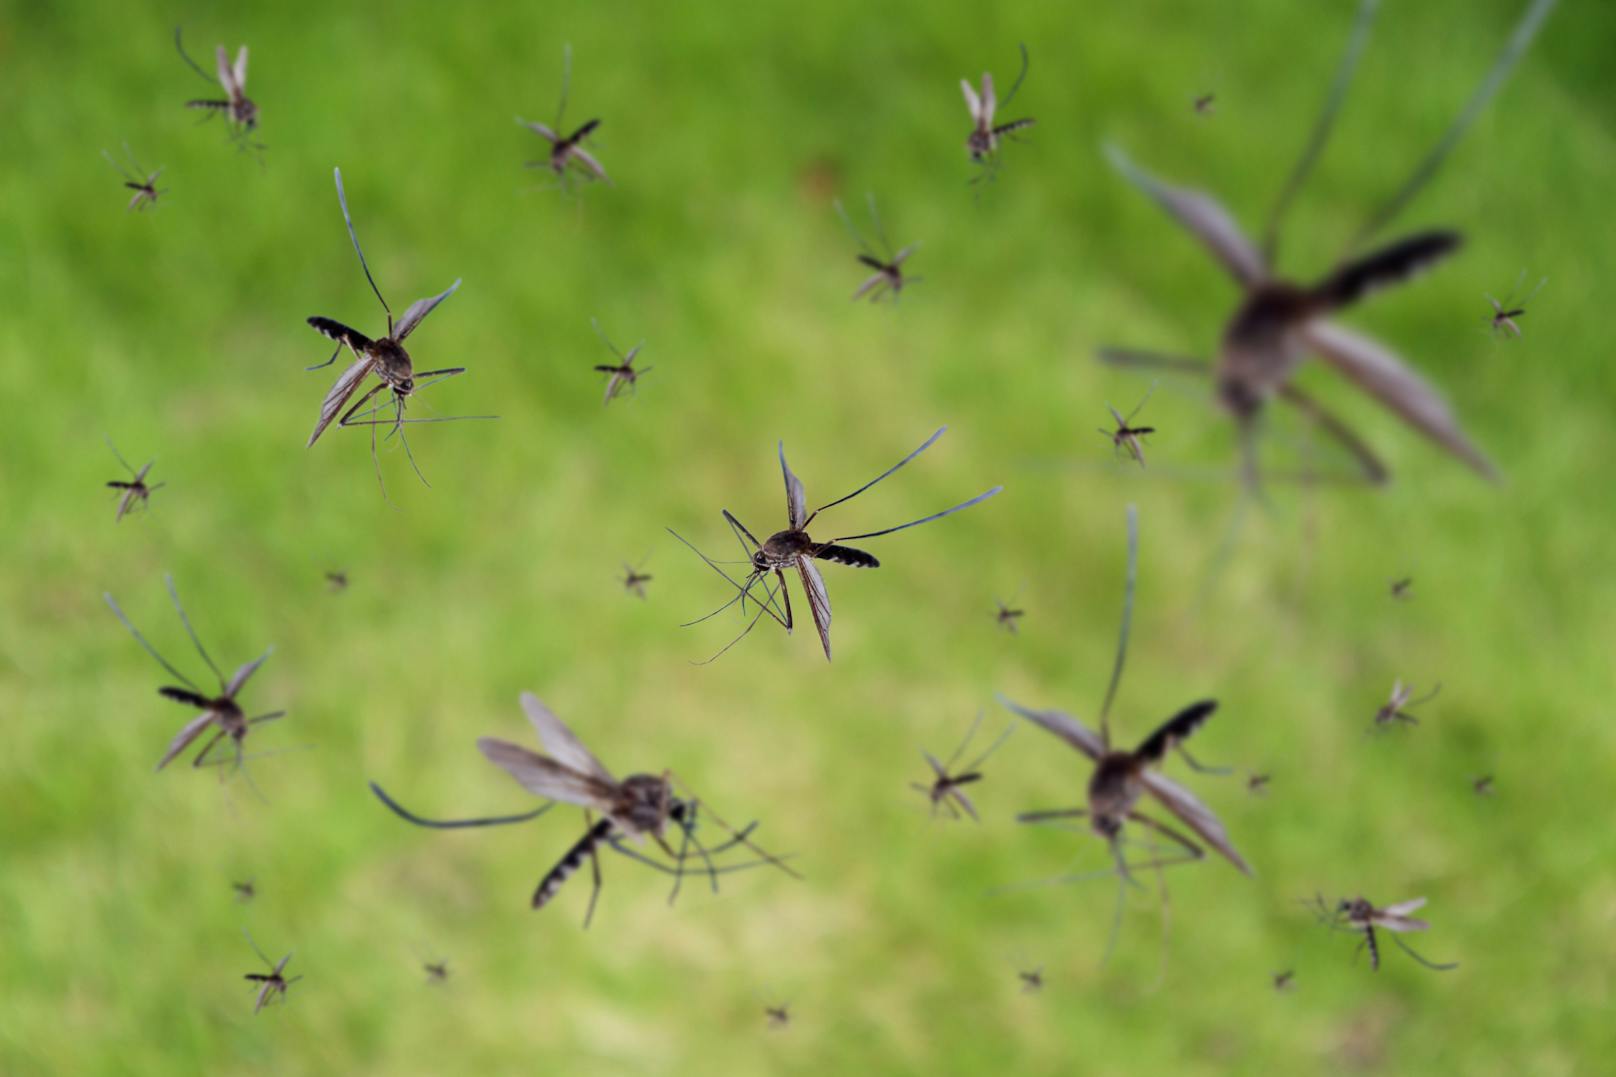 In Australien entsteht eine Mückenzucht. Dort sollen Exemplare gezüchtet werden, die zur Bekämpfung von durch Mücken übertragene Infektionskrankheiten eingesetzt werden.